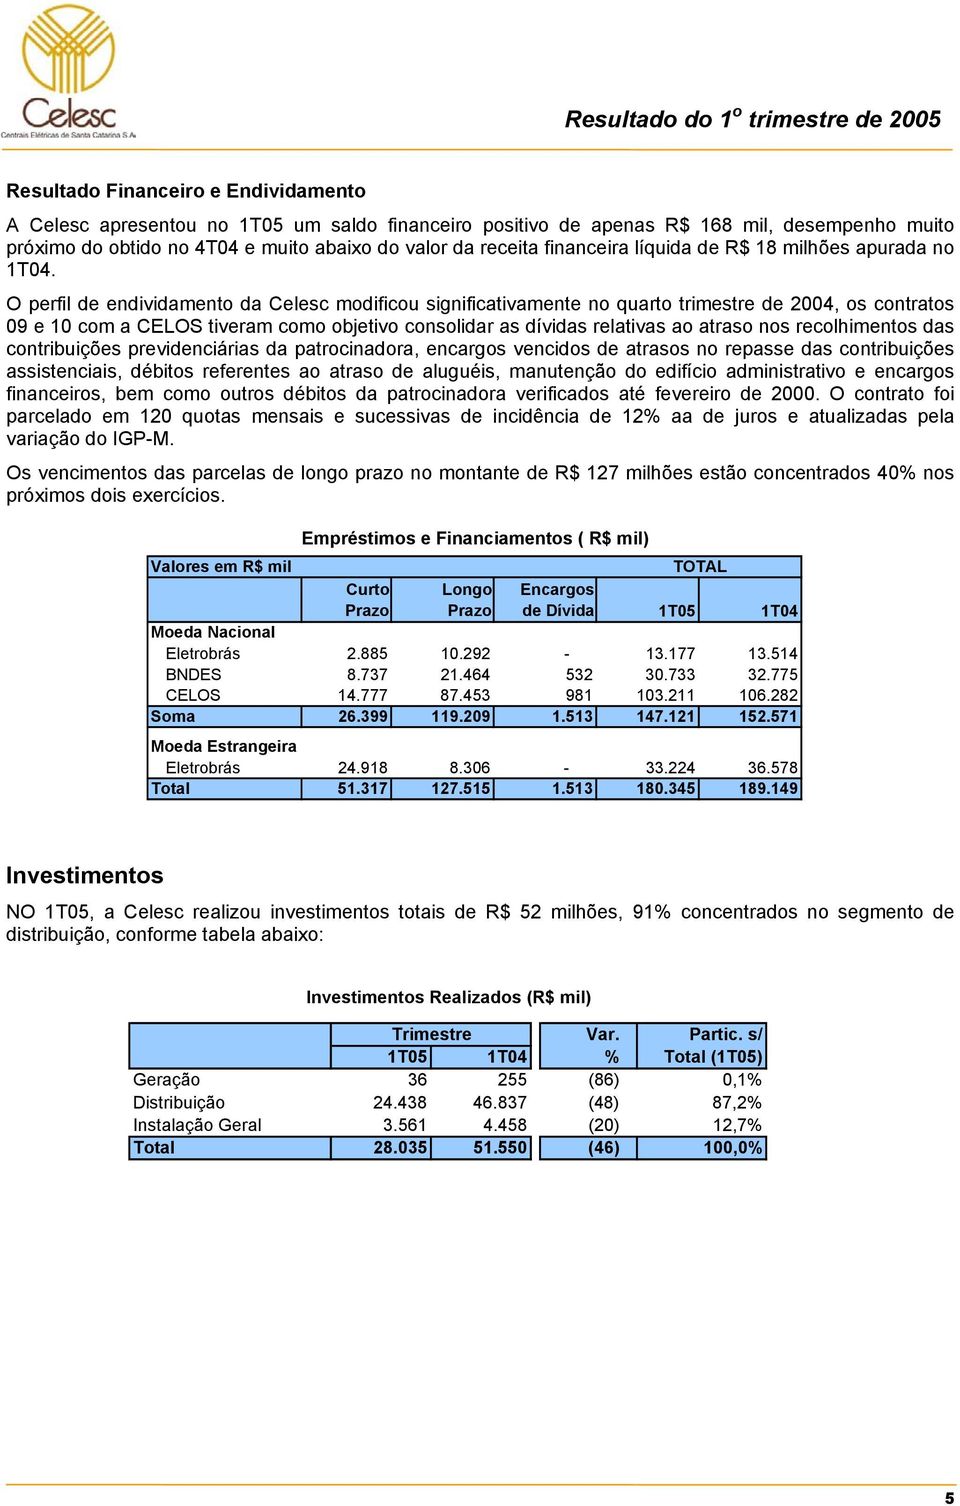 O perfil de endividamento da Celesc modificou significativamente no quarto trimestre de 2004, os contratos 09 e 10 com a CELOS tiveram como objetivo consolidar as dívidas relativas ao atraso nos